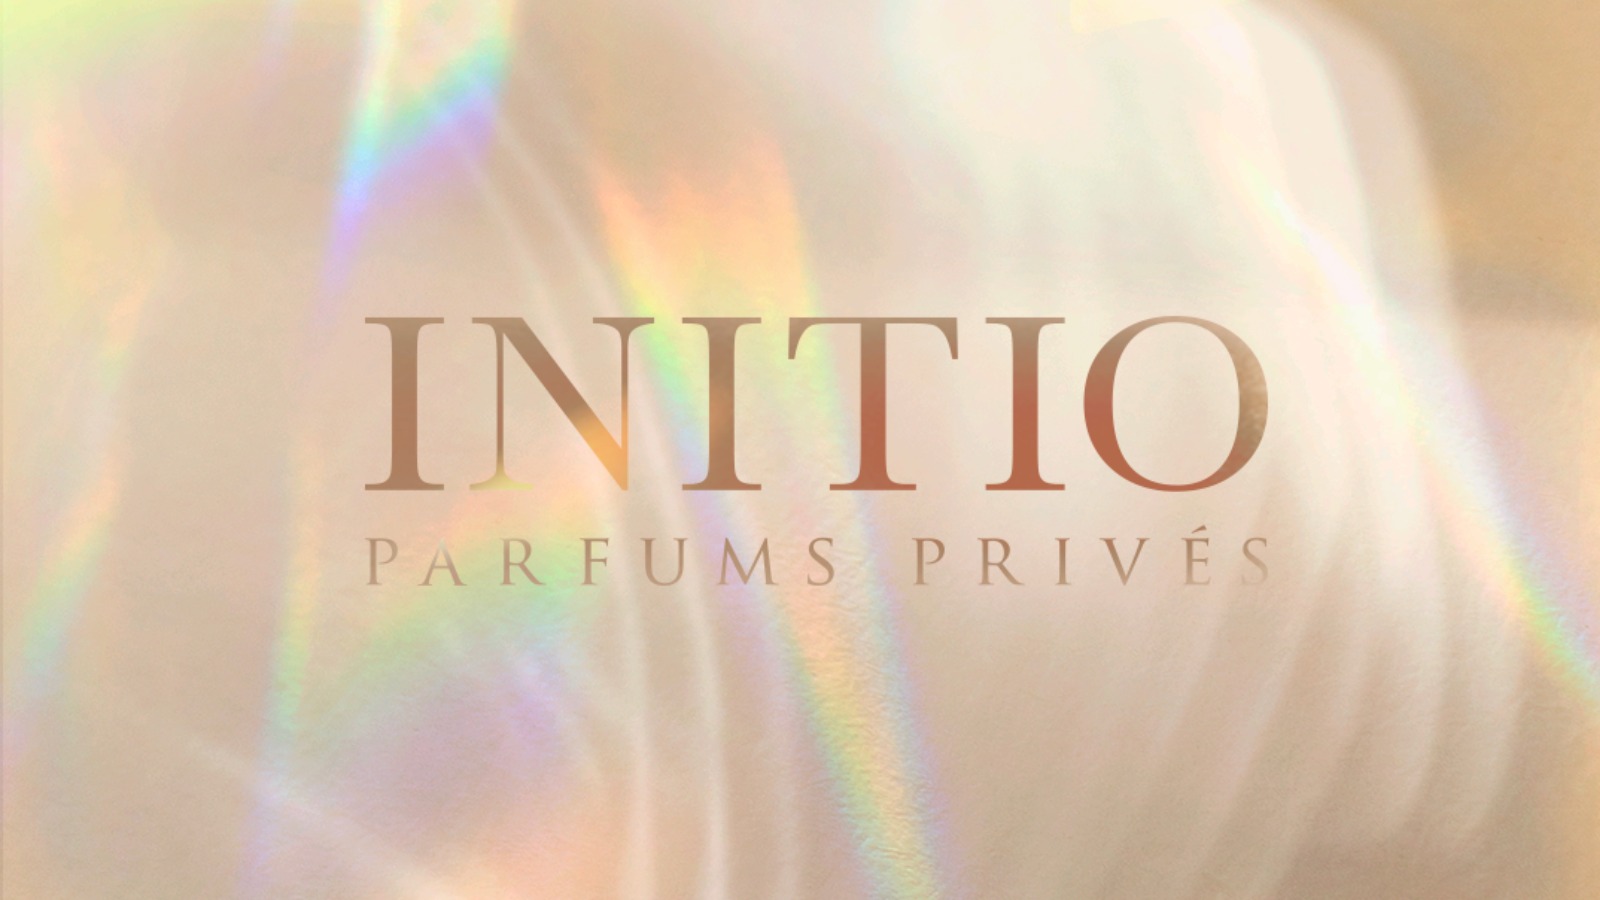 Initio Parfums Privés AH Perfumes nước hoa AH Perfumes 1 Initio Parfums Privés: Tuyệt tác độc bản dành cho những tay sành nước hoa! 